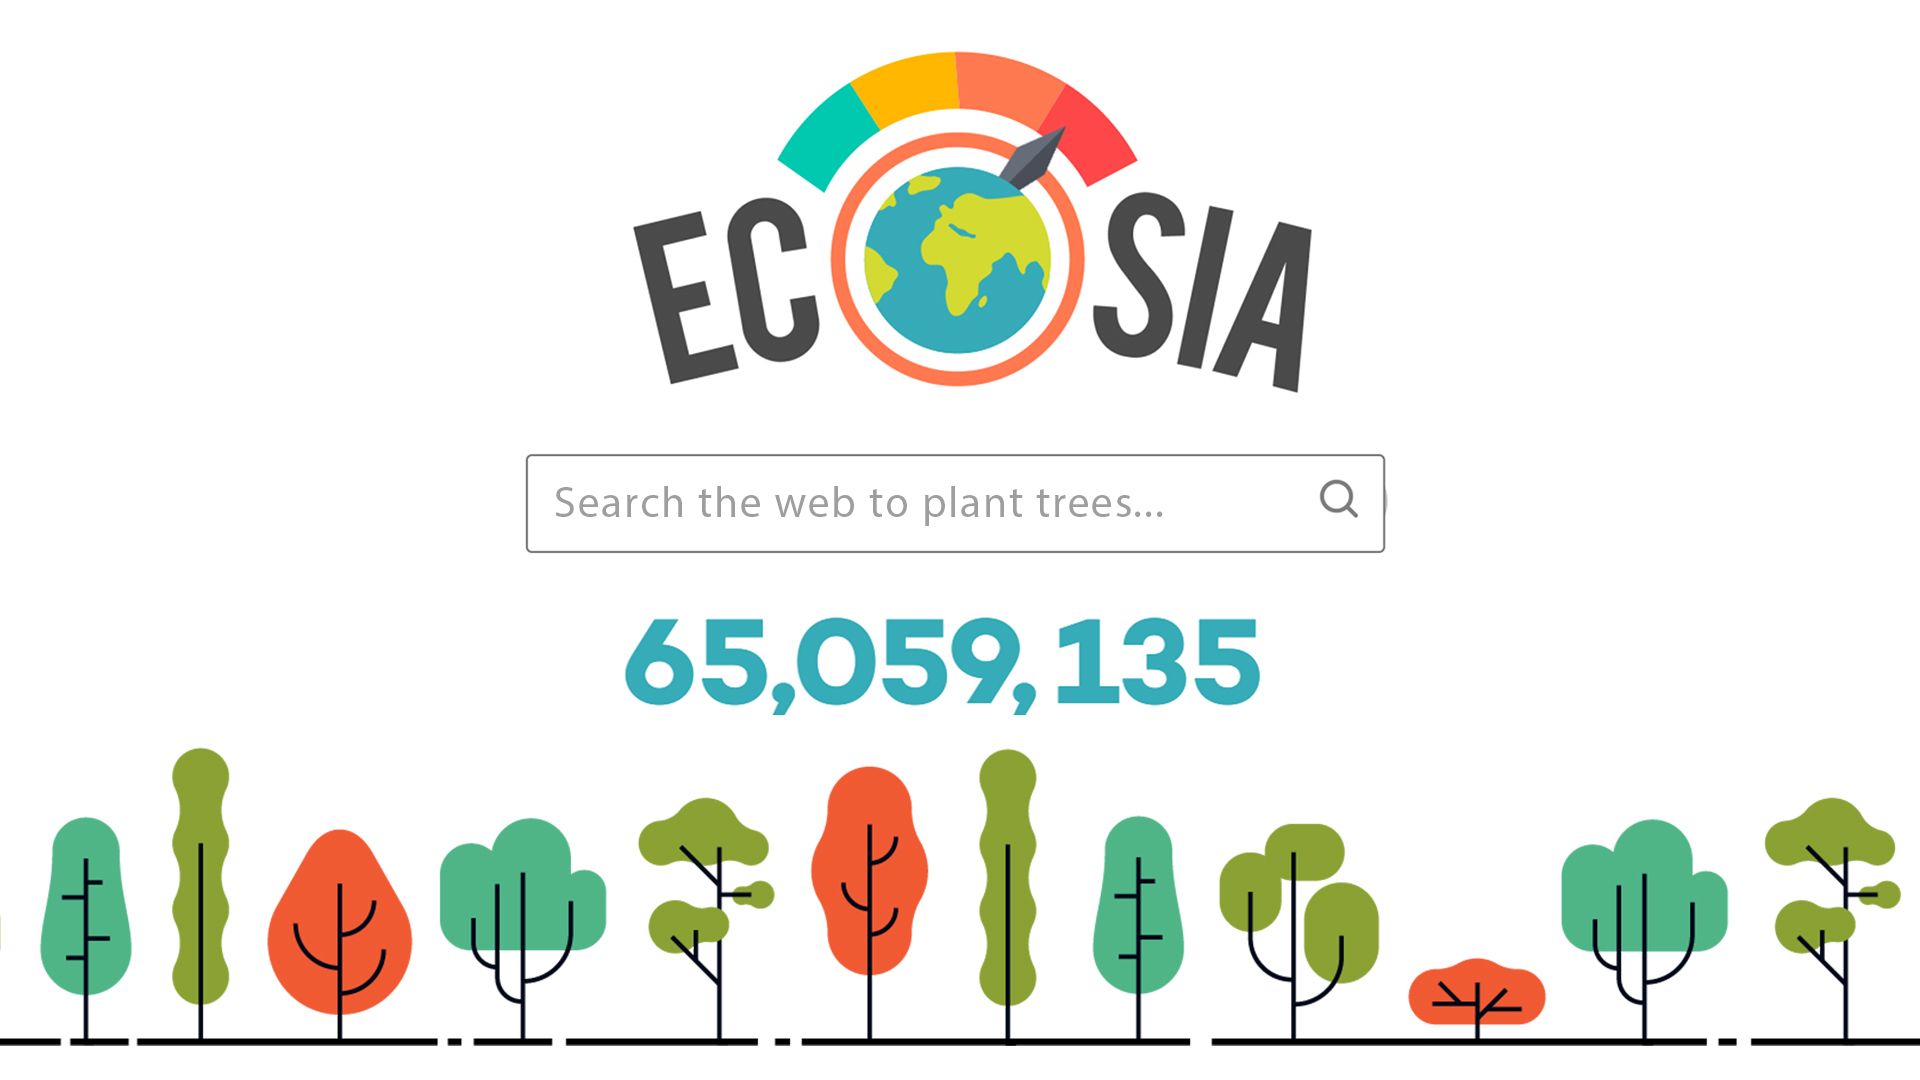 "Groene zoekmachine Ecosia lanceert eigen browser